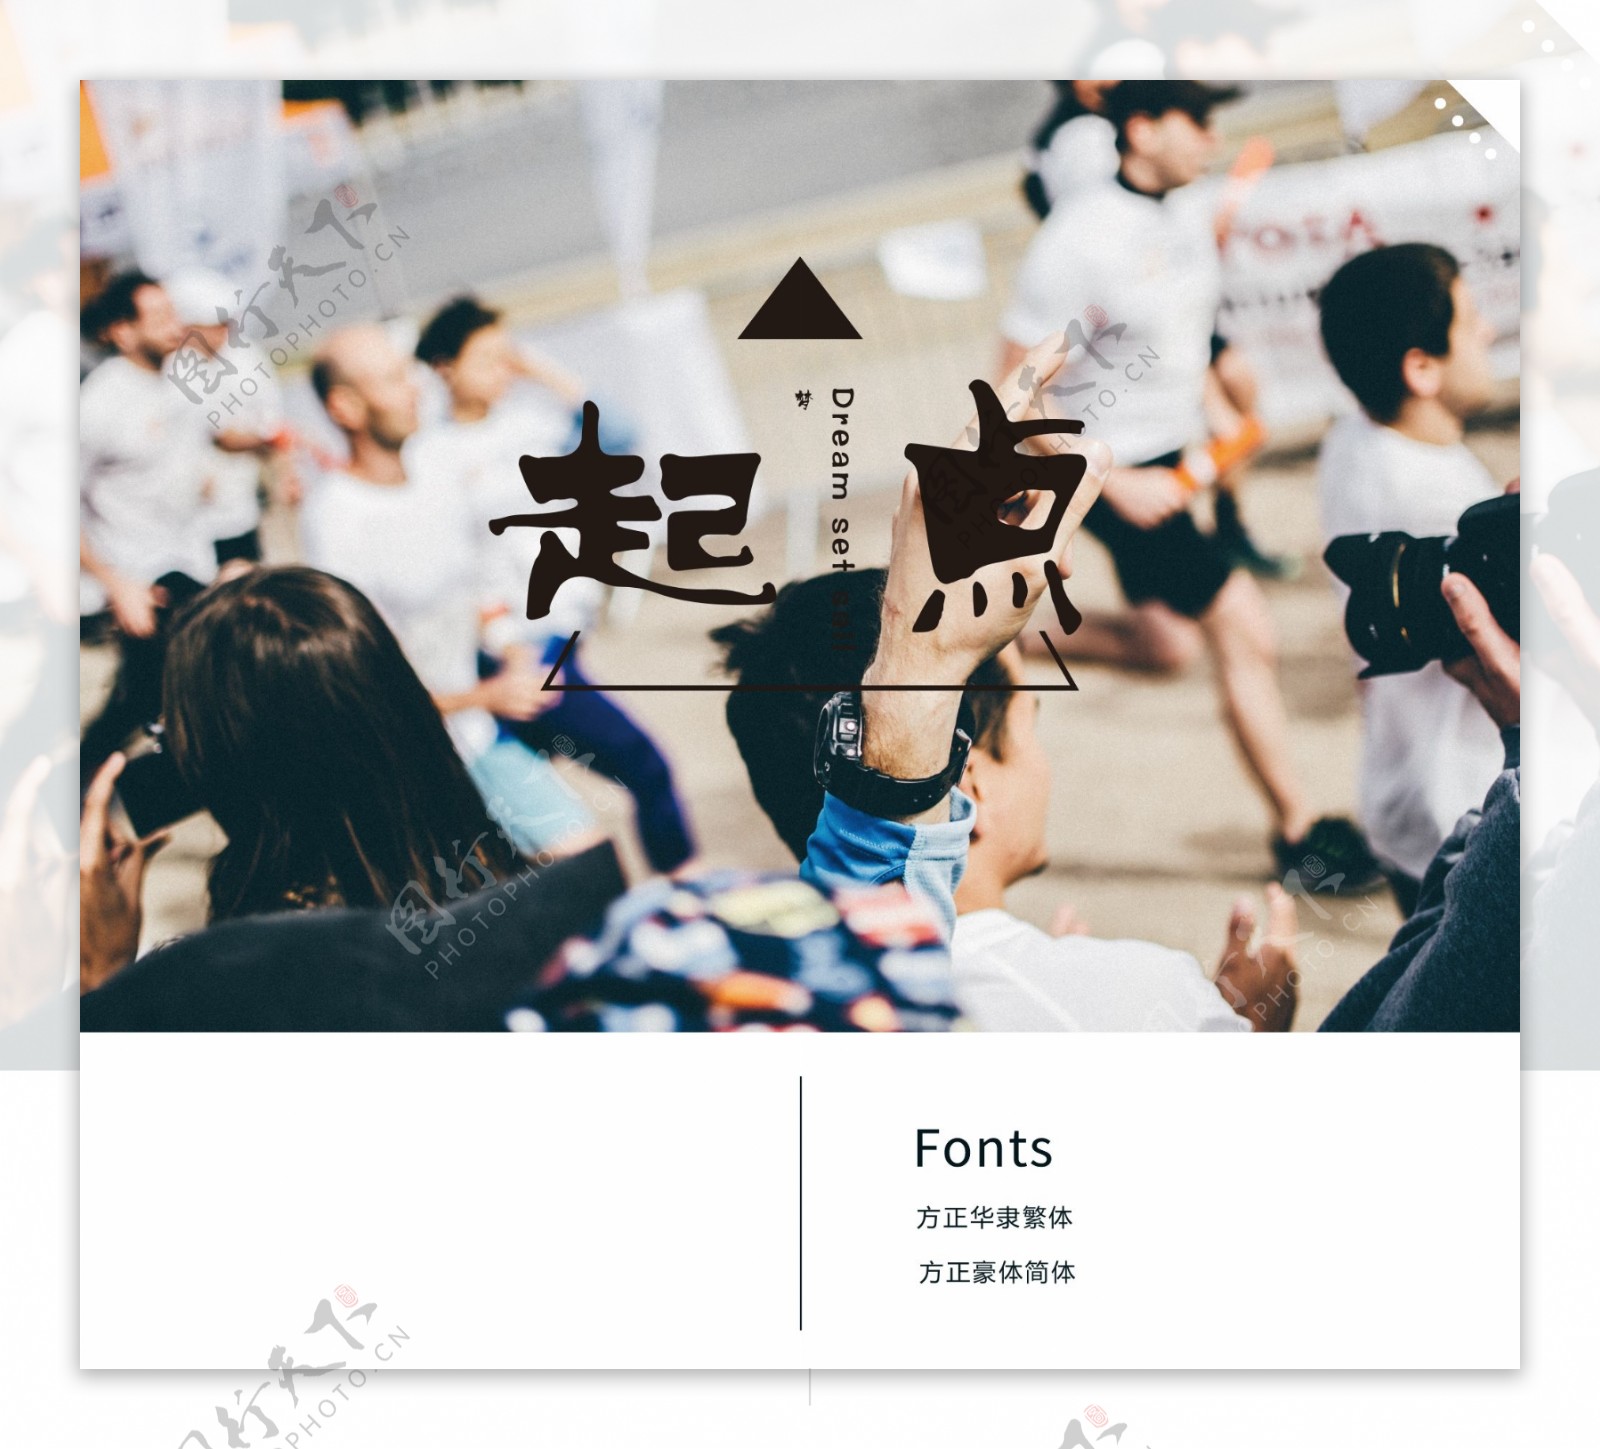 创意中文标题示例海报附字体